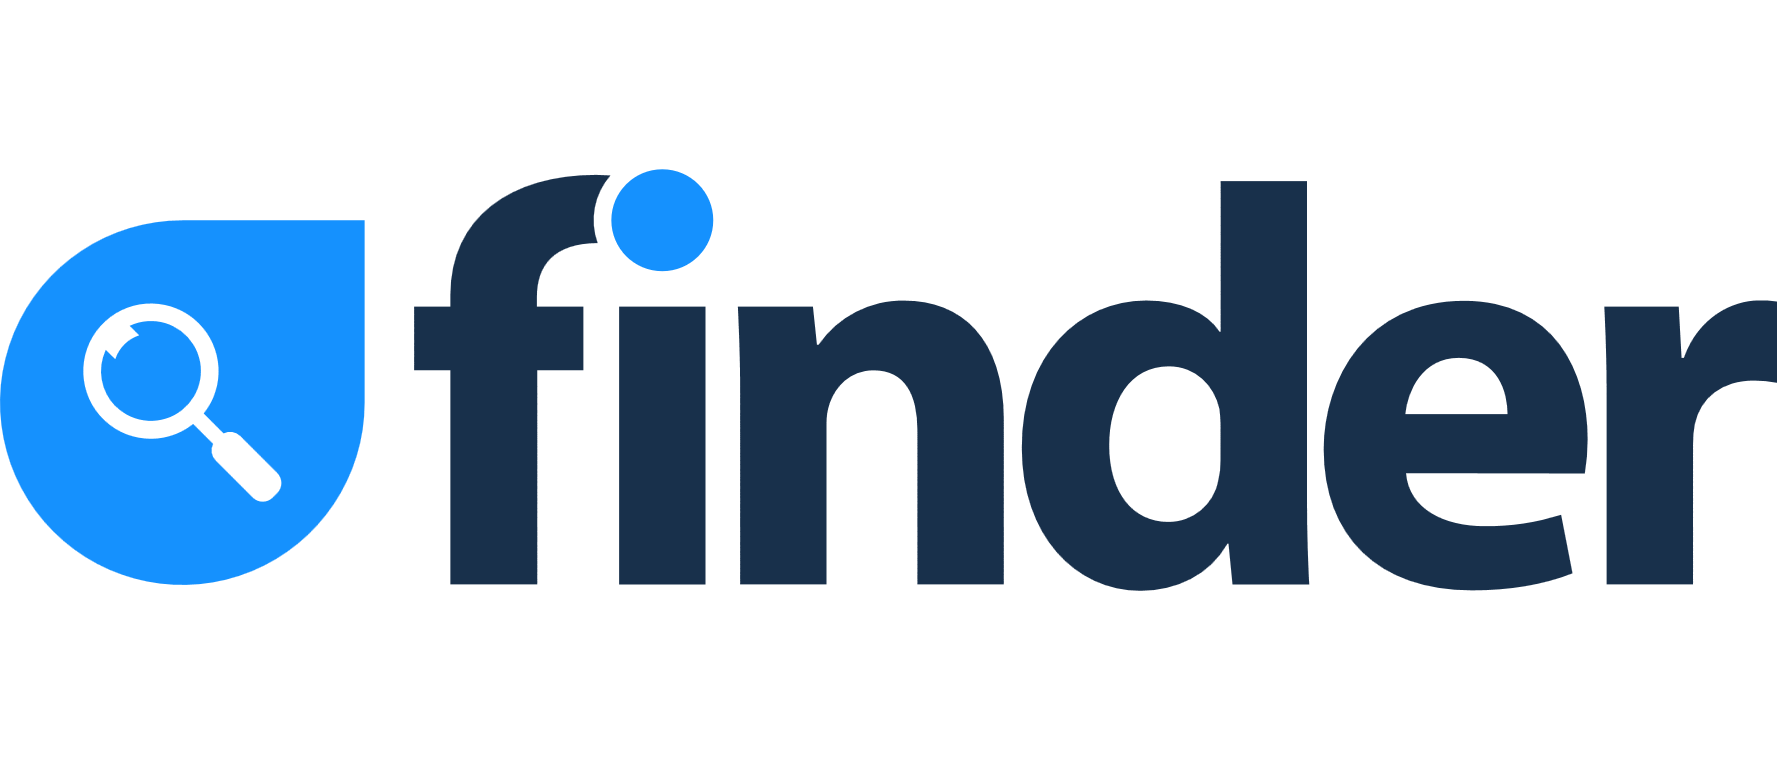 Finder logo - standard